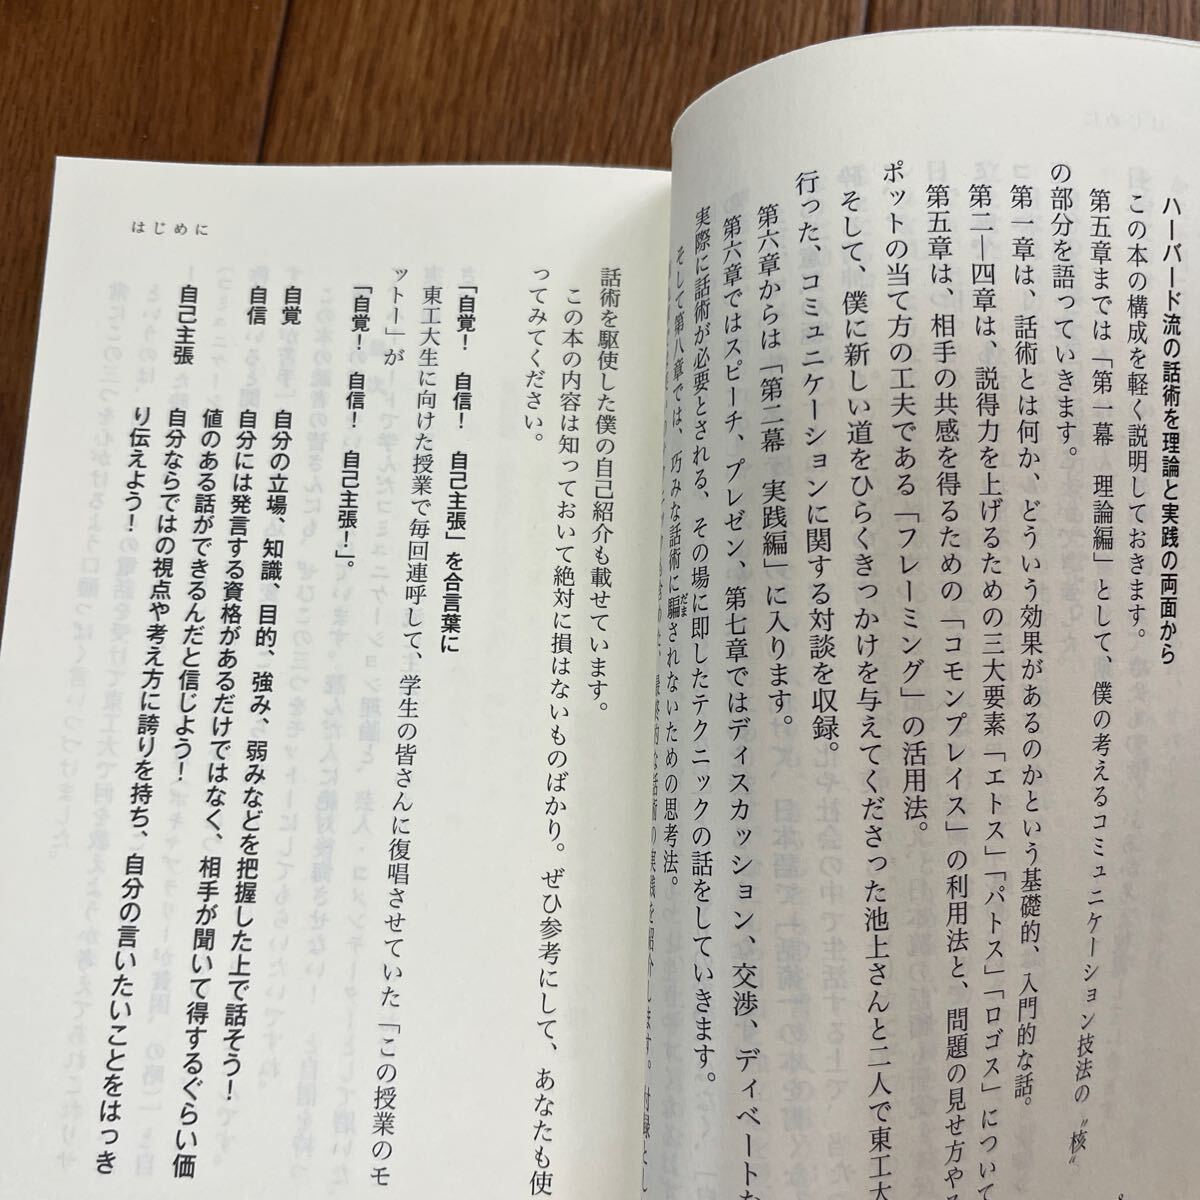 [ подпись книга@/ первая версия ] Patrick * Harlan [tsuka.! рассказ .] упаковка n Kadokawa one Thema 21 2 -слойный покрытие автограф книга